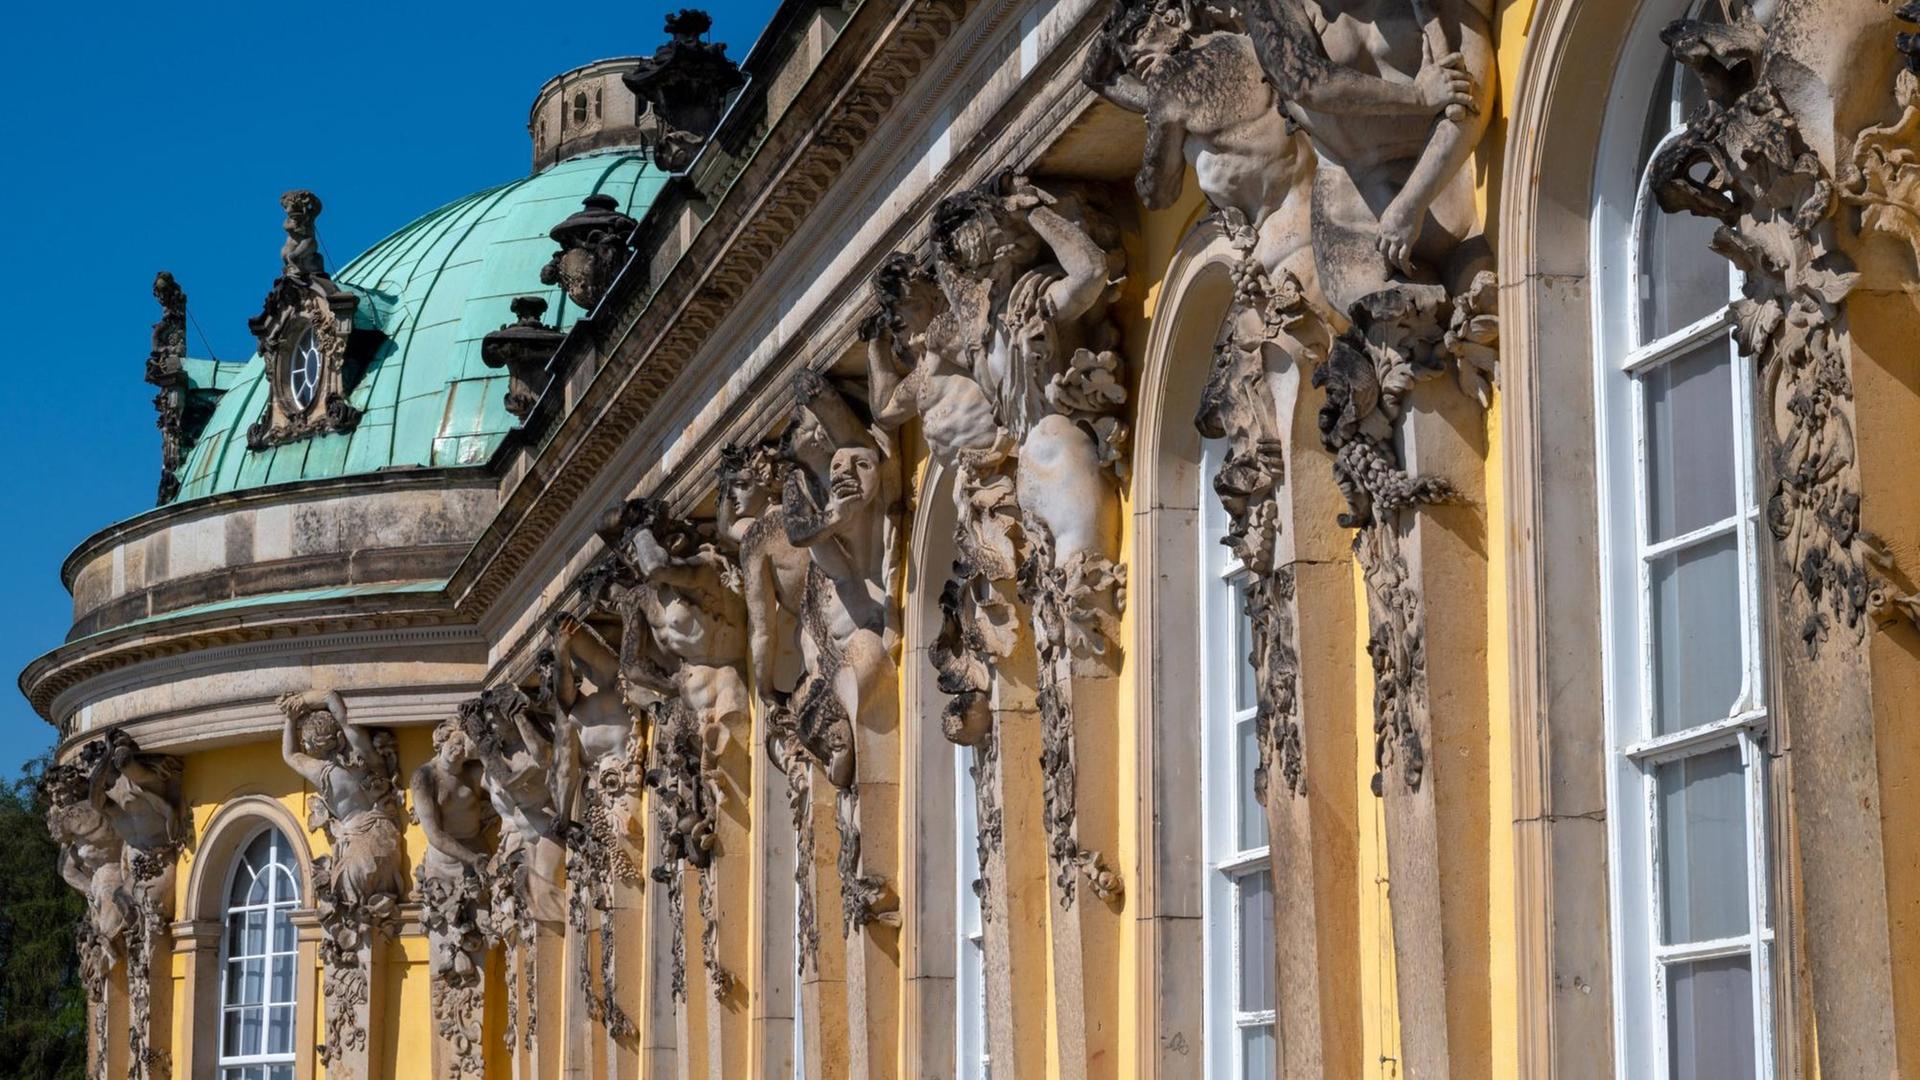 Blick auf einen Teil der Außenfassade von Schloss Sanssouci in Potsdam